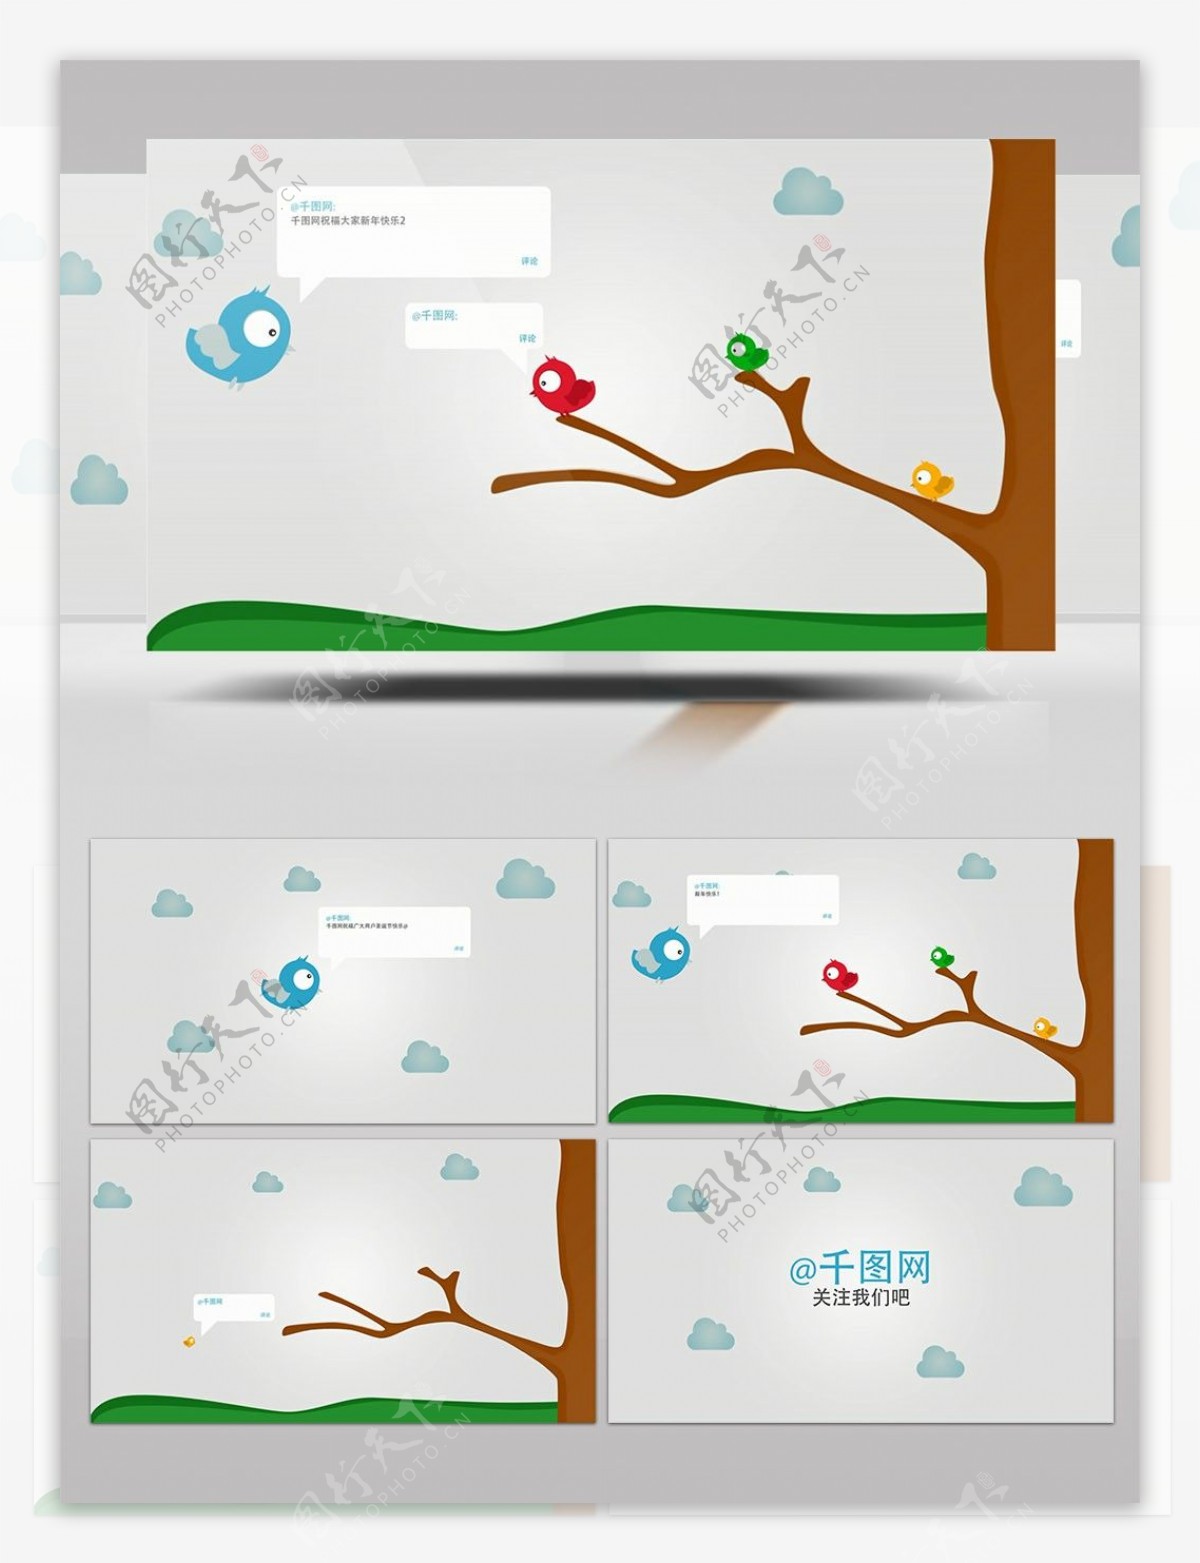 微博网络社交媒体交流动画视频AE模板